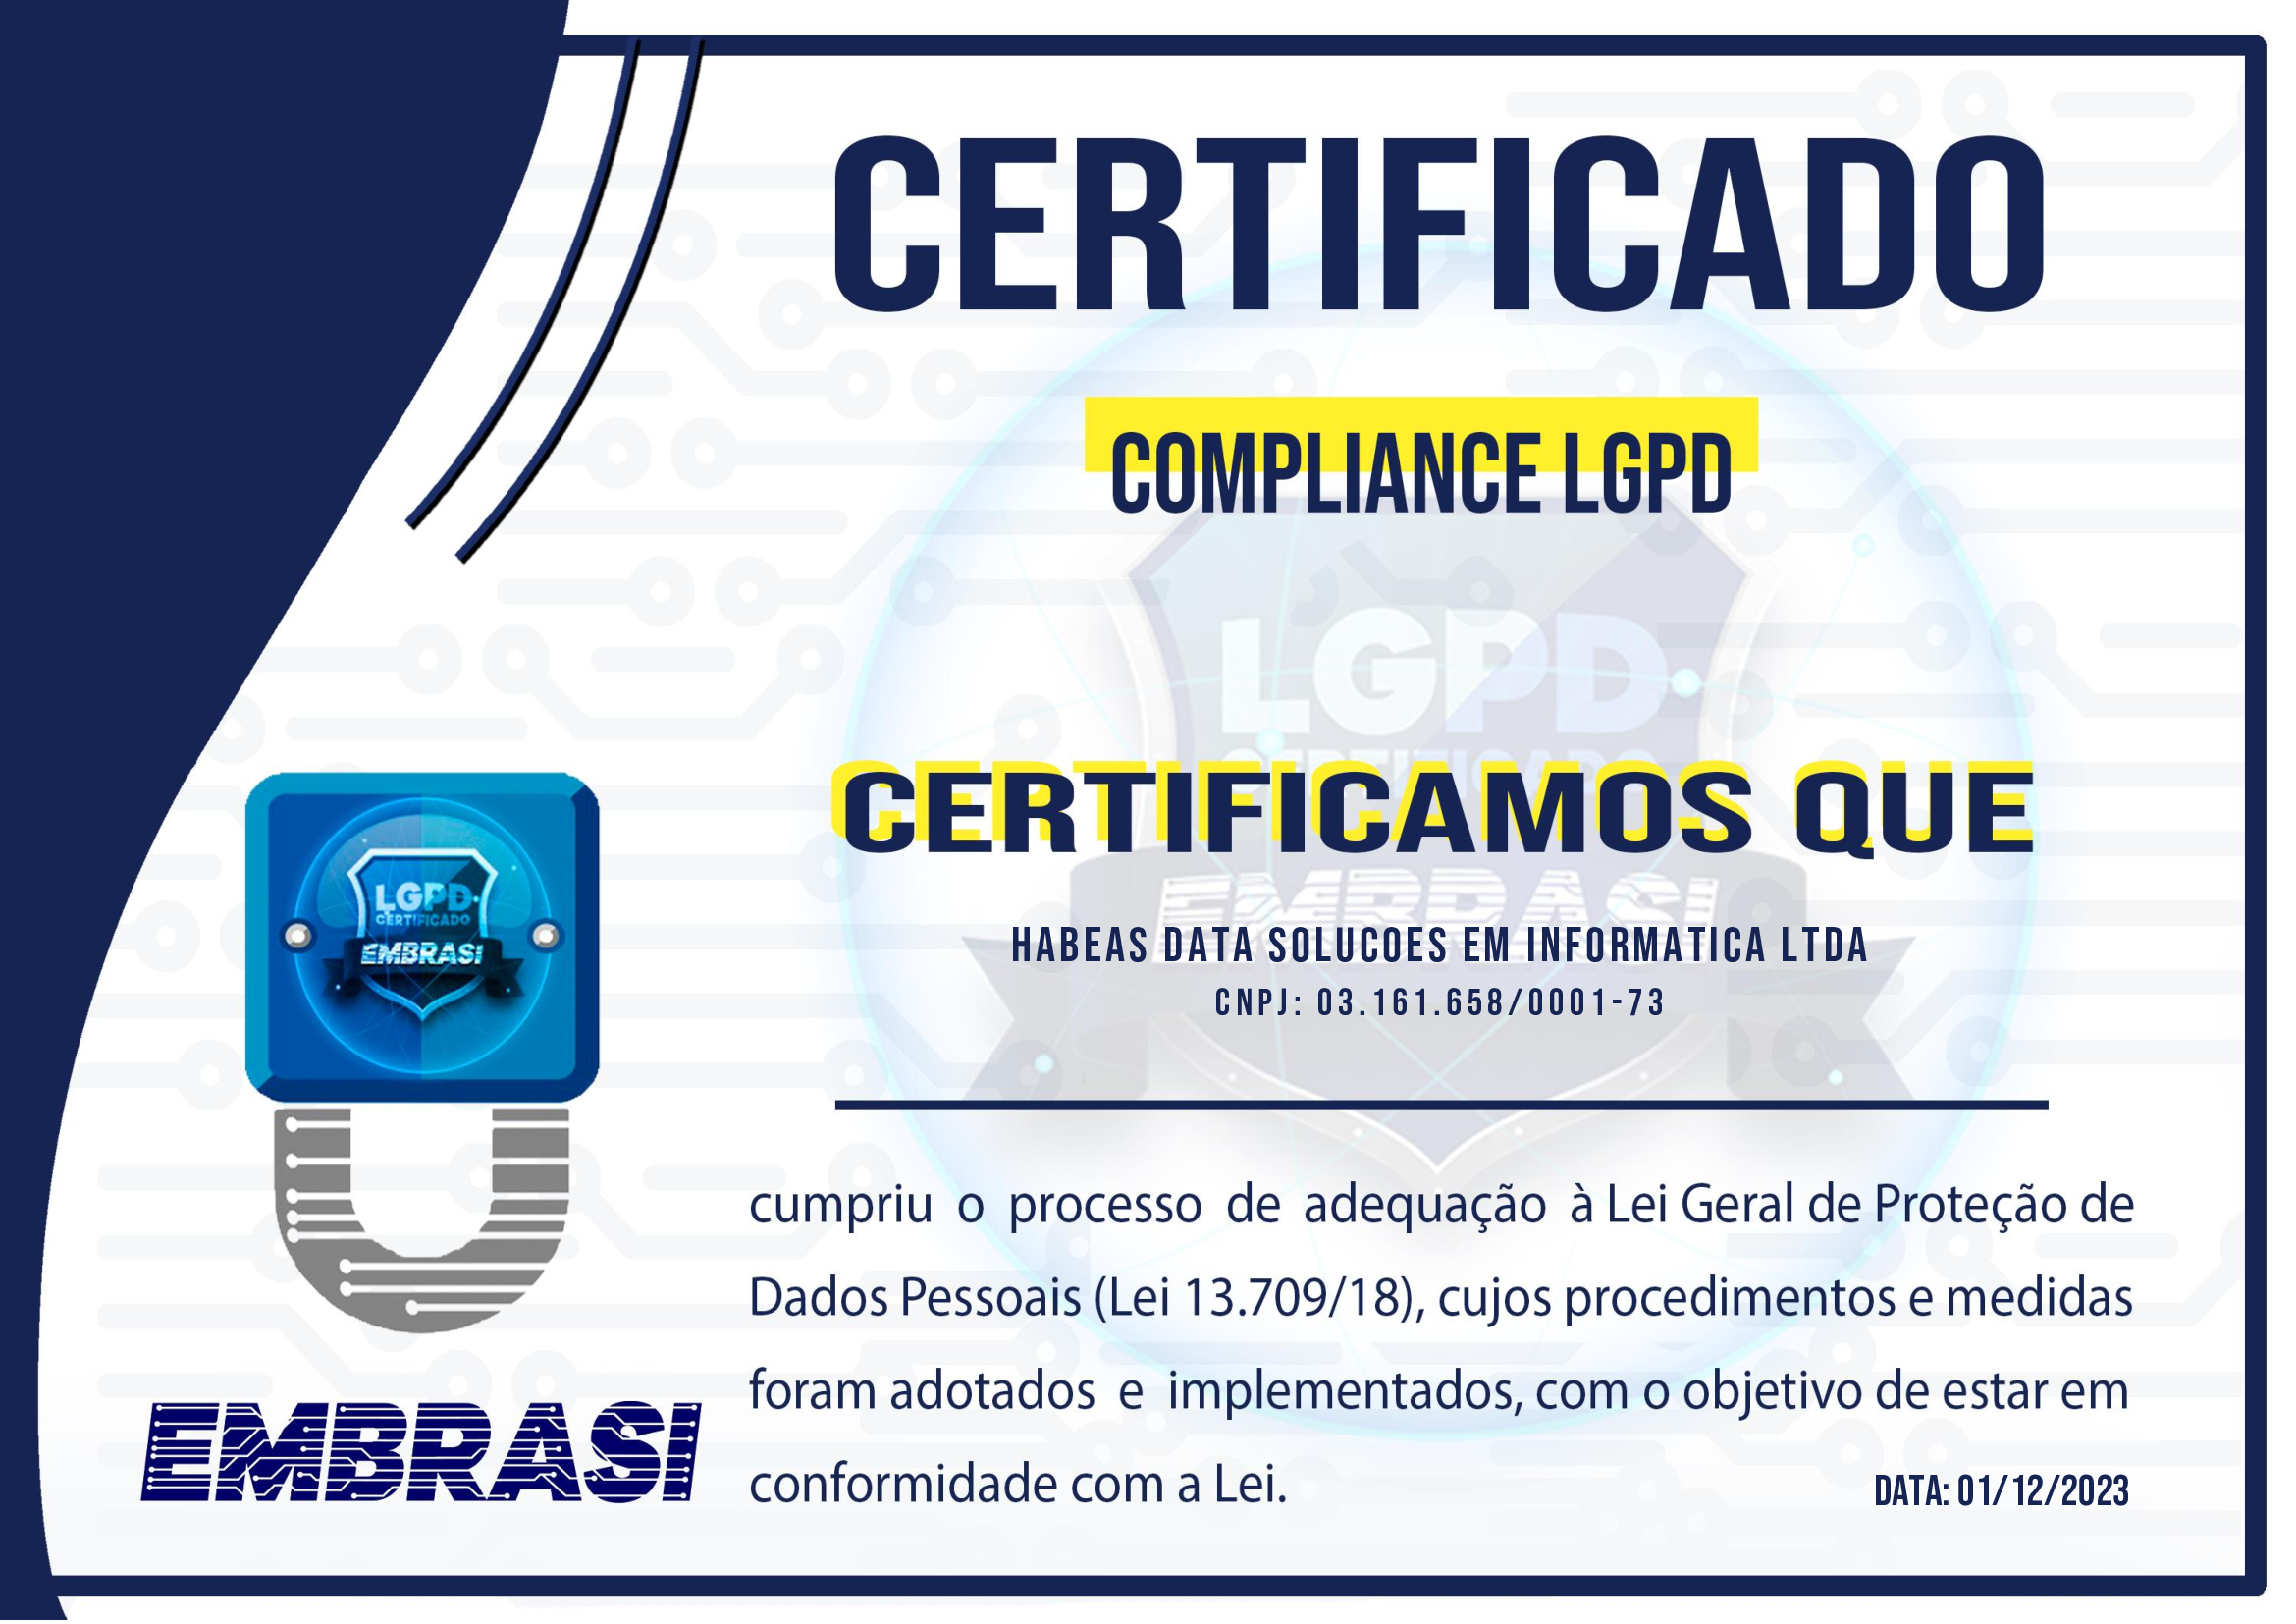 Certificado LGPD da Habeas Data Soluções em Informática Ltda